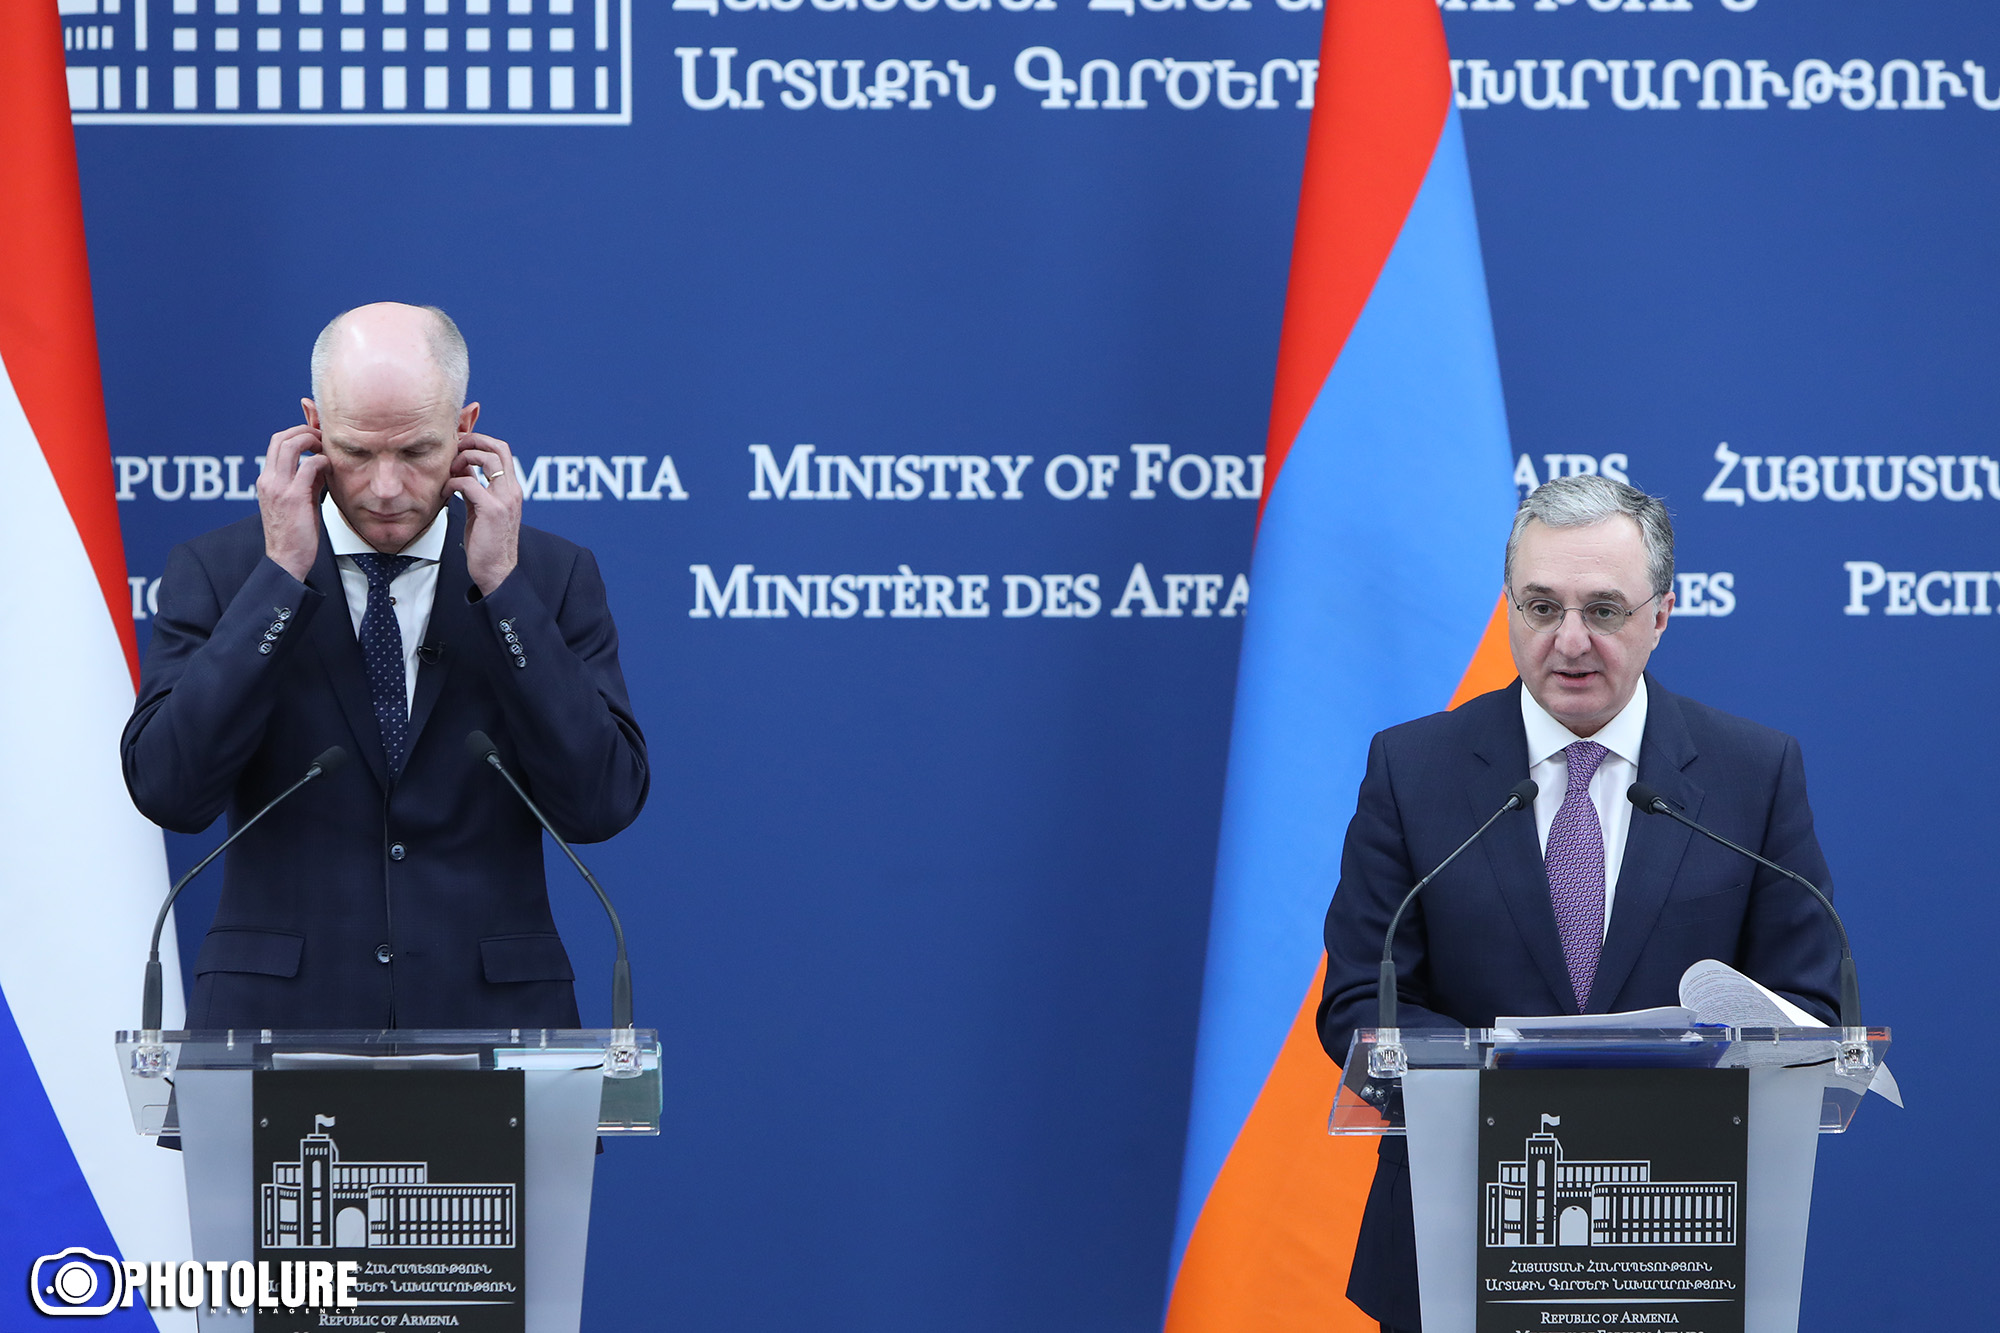 Весной состоится визит премьер-министра Армении в Нидерланды - МИД